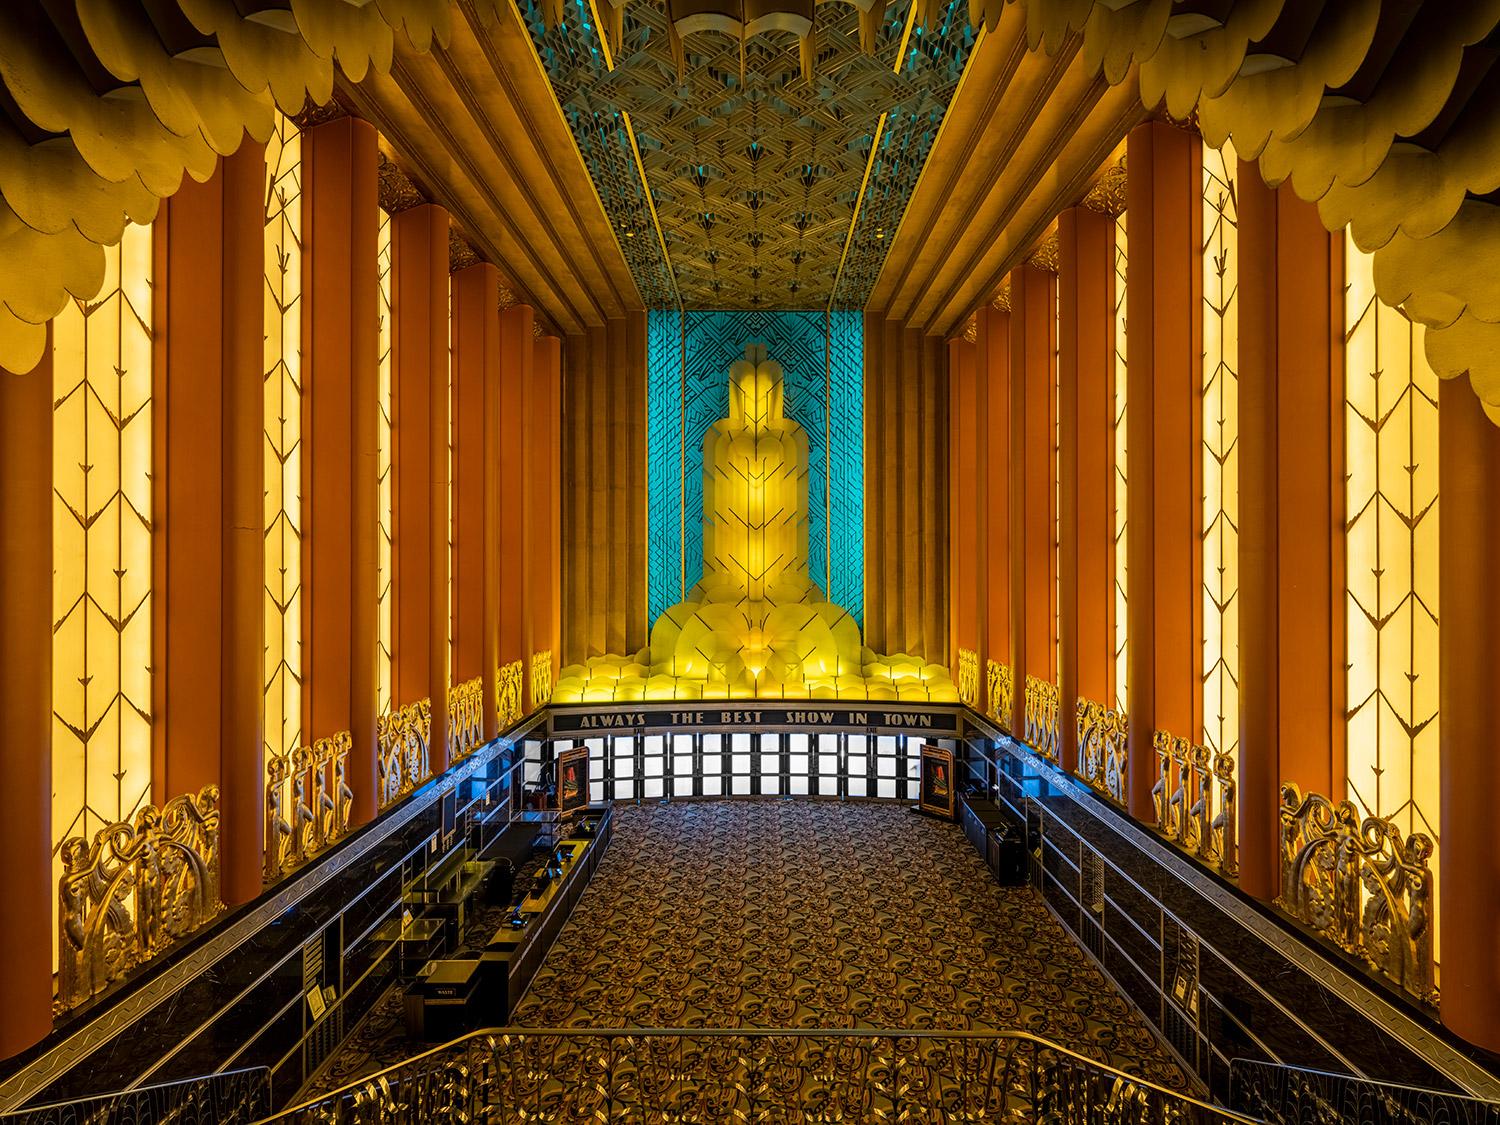 Der ursprünglich "The Met" (Metropolitan Theatre) genannte Filmpalast wurde 1925 von dem Architekten Clarence Blackhall im Stil der Renaissance und des Barock entworfen. 

Serie: Architektur der vergoldeten Träume
Archiv-Pigment Canson Platine